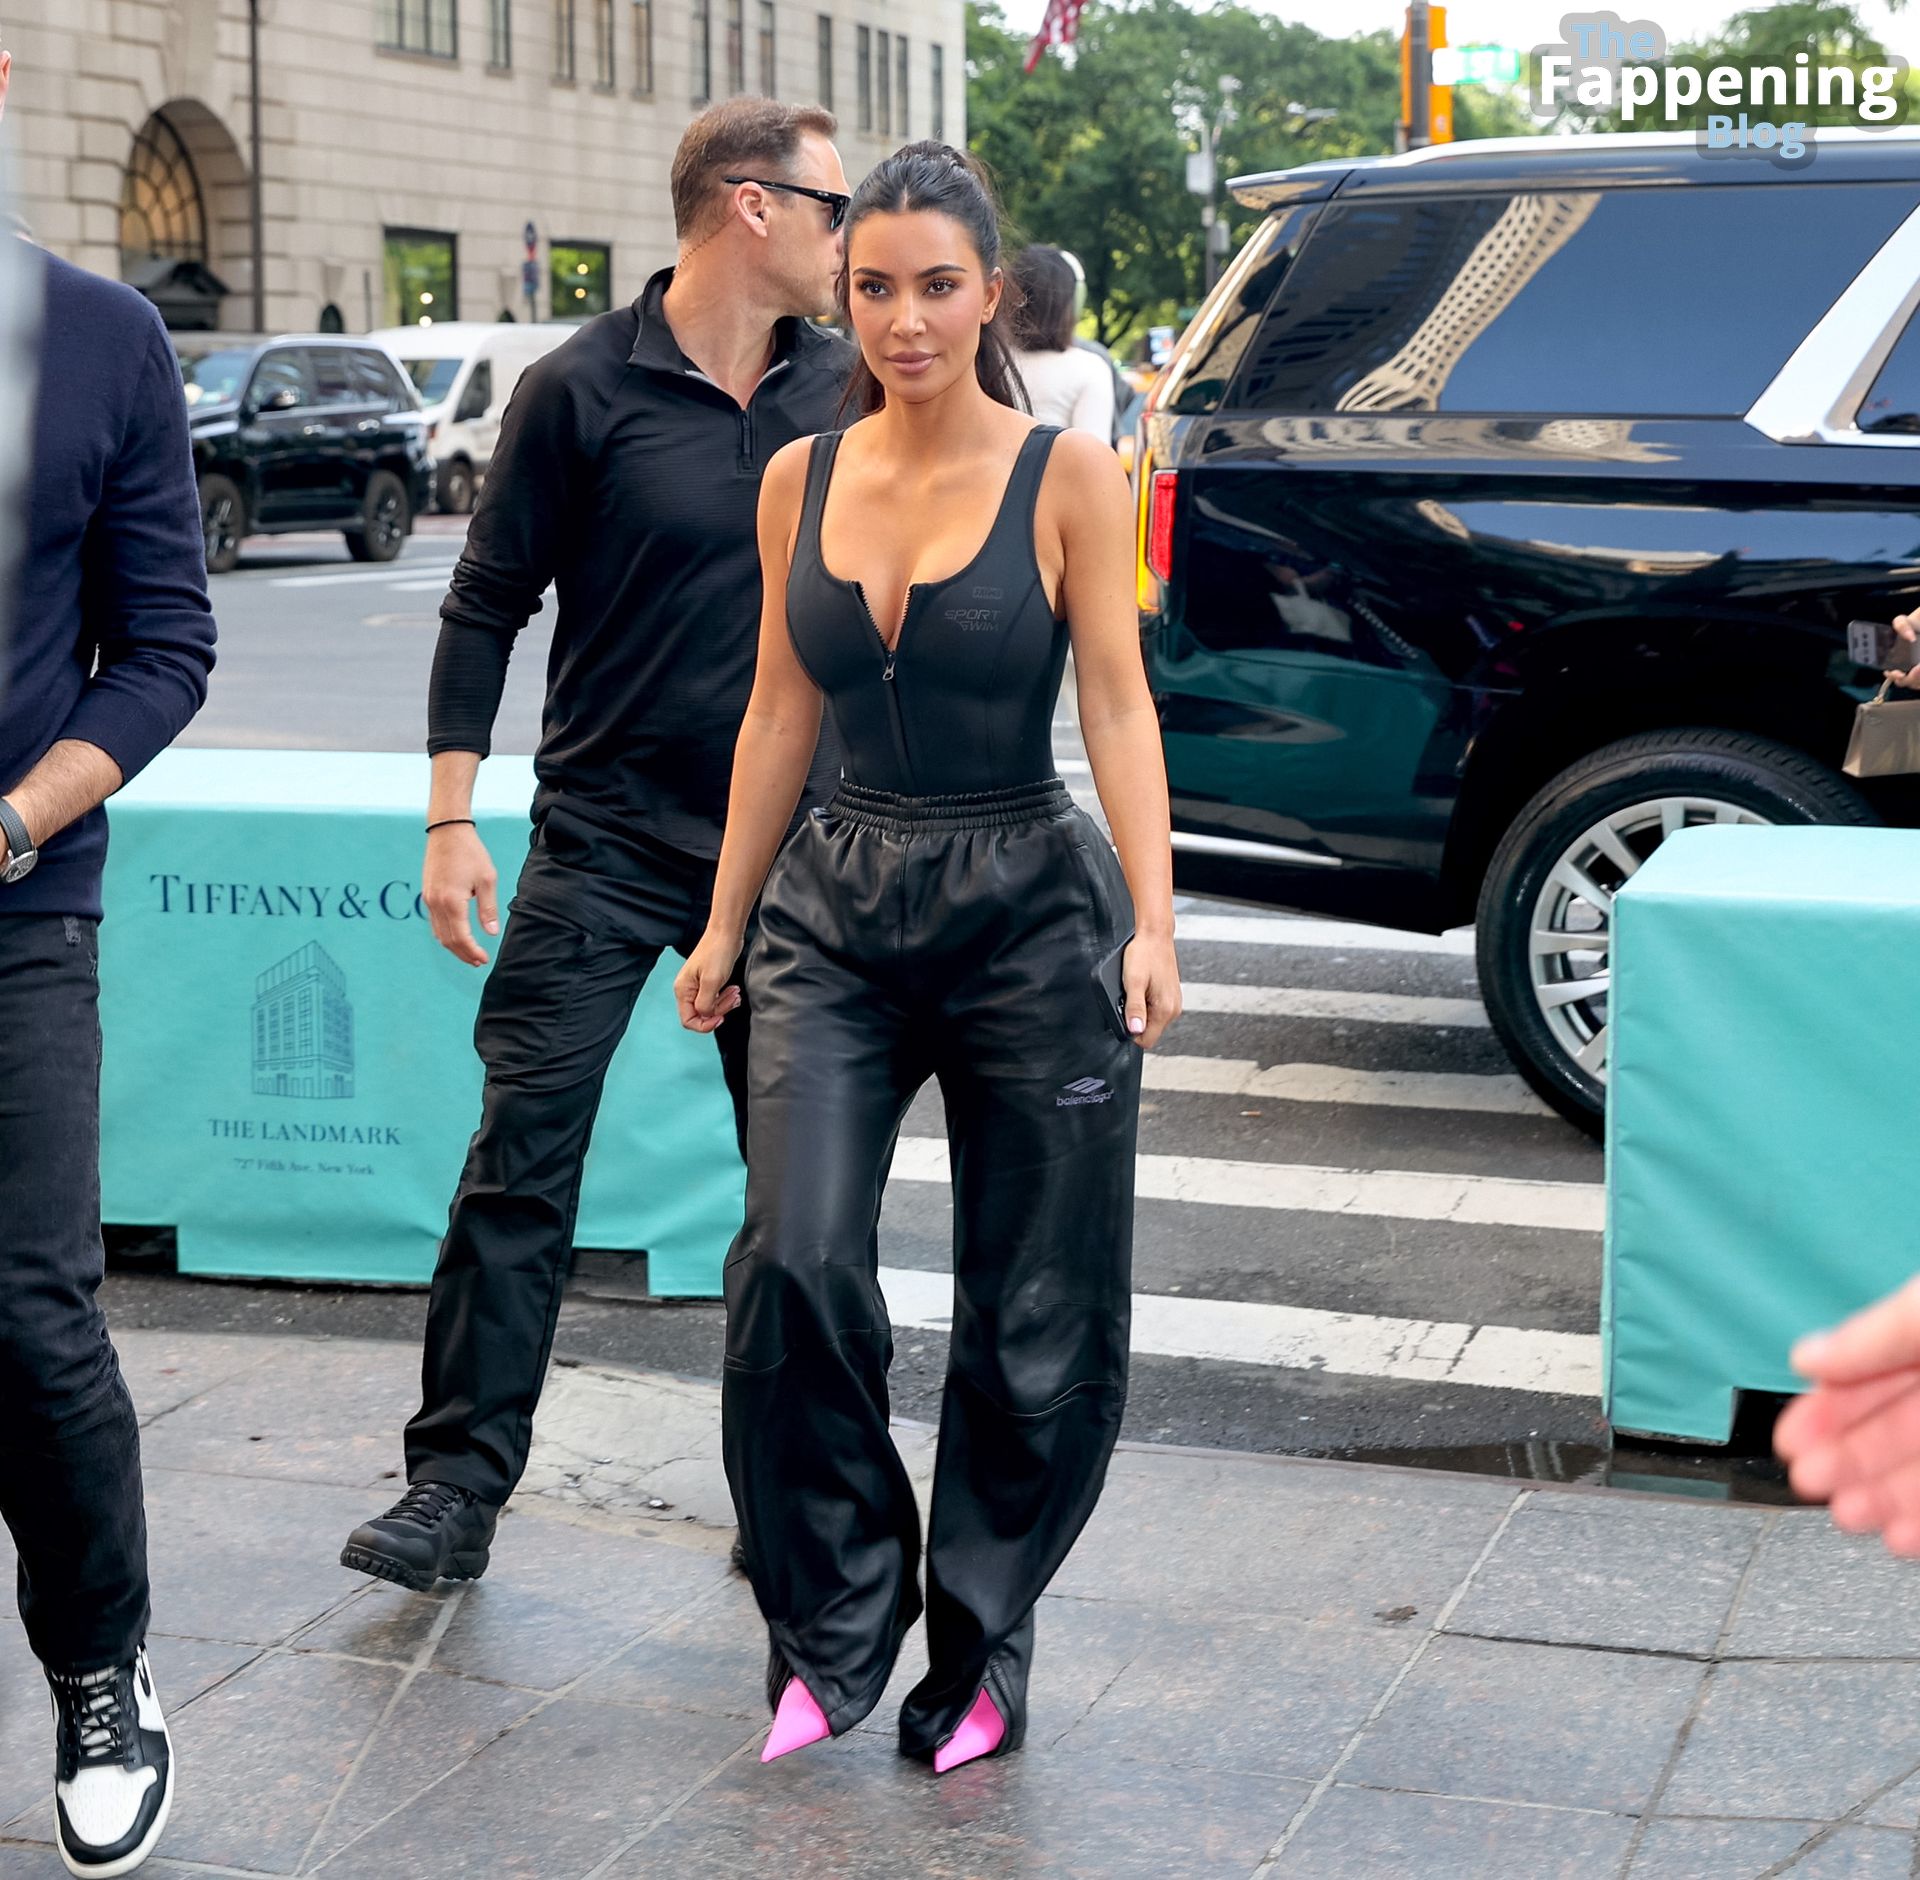 Kim-Kardashian-Sexy-The-Fappening-Blog-16-2.jpg